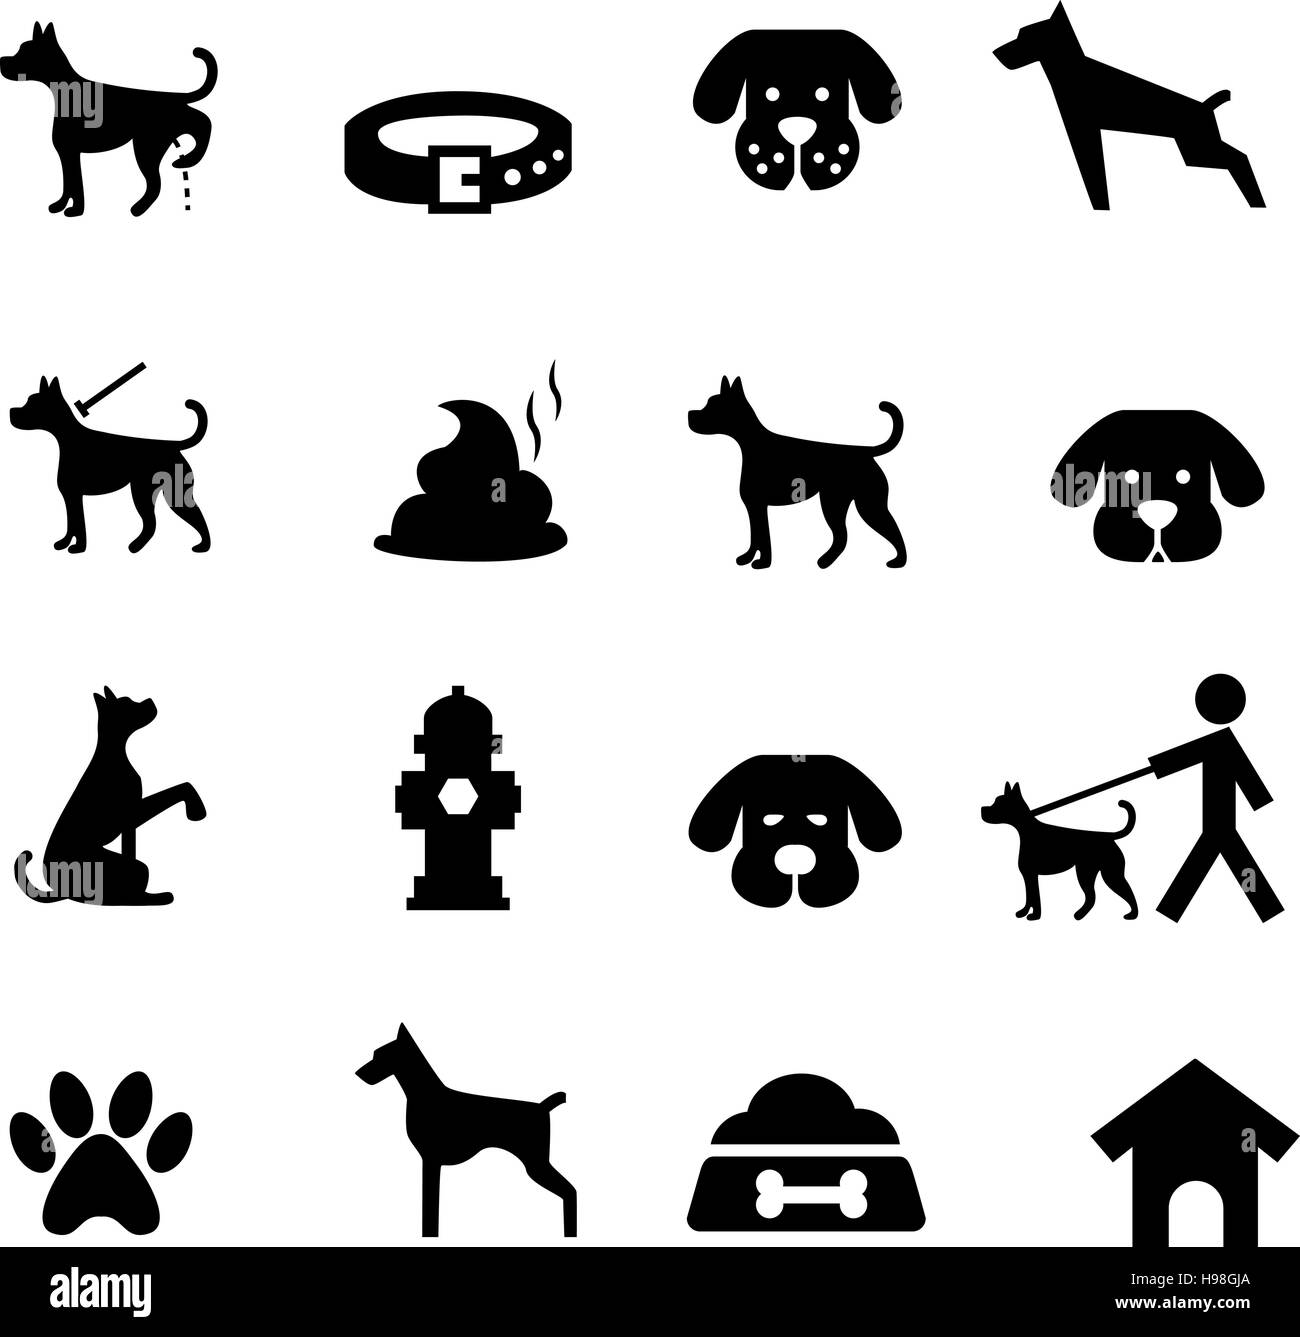 Hund-Icon-Set. Vektor-Illustration, EPS 10 Stock-Vektorgrafik - Alamy